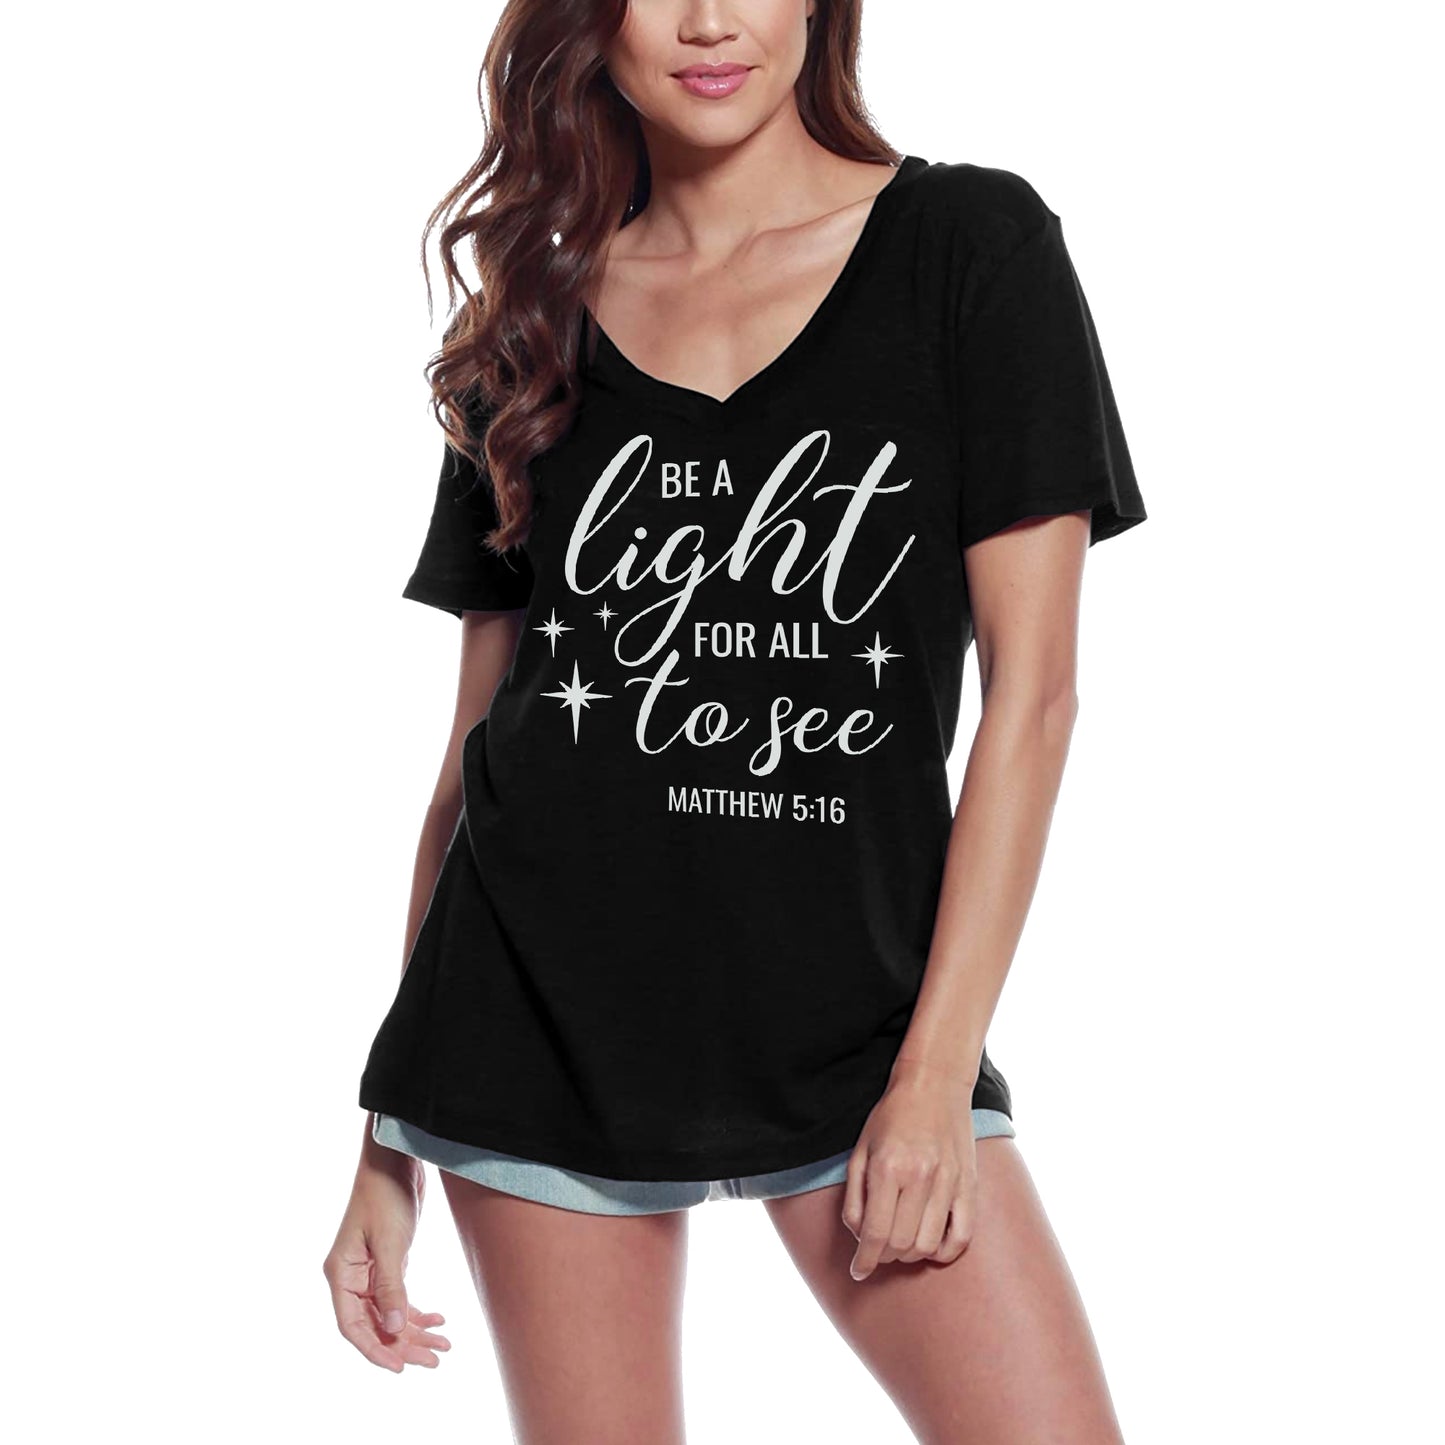 ULTRABASIC Women's T-Shirt Be a Light for All to See - Matthew Bible Short Sleeve Tee Shirt Tops